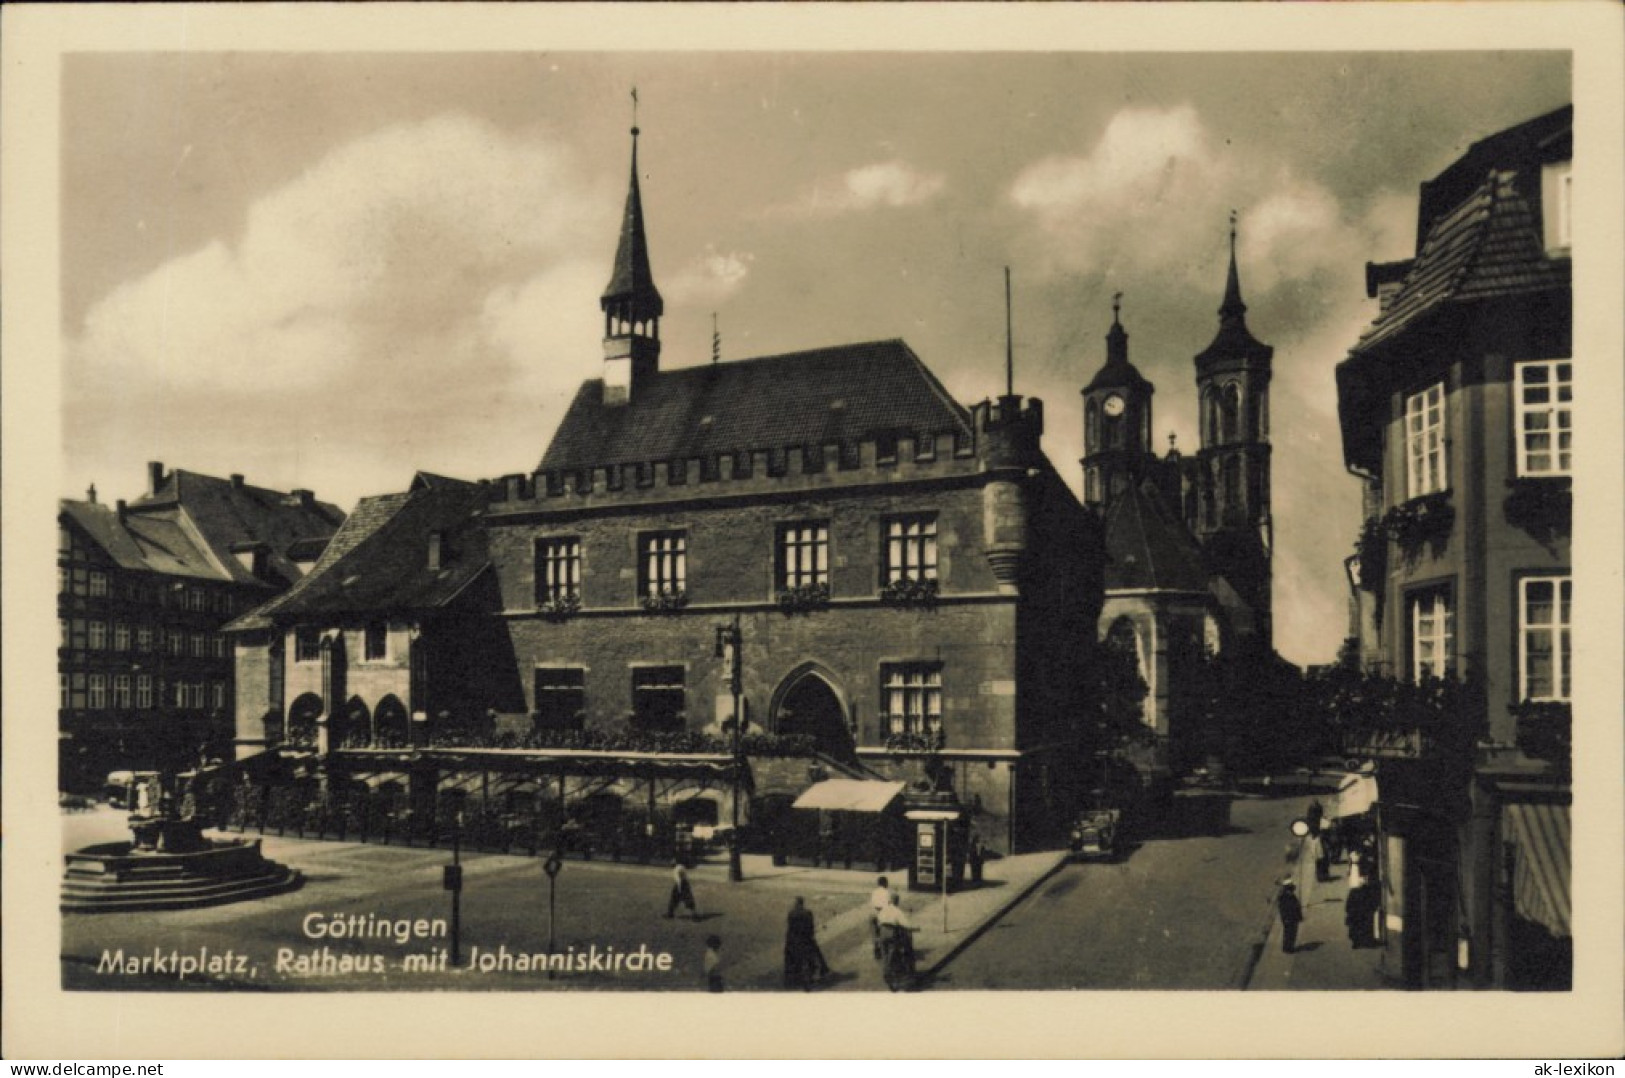 Ansichtskarte Göttingen Rathaus, Markt - Kiosk 1934 - Goettingen